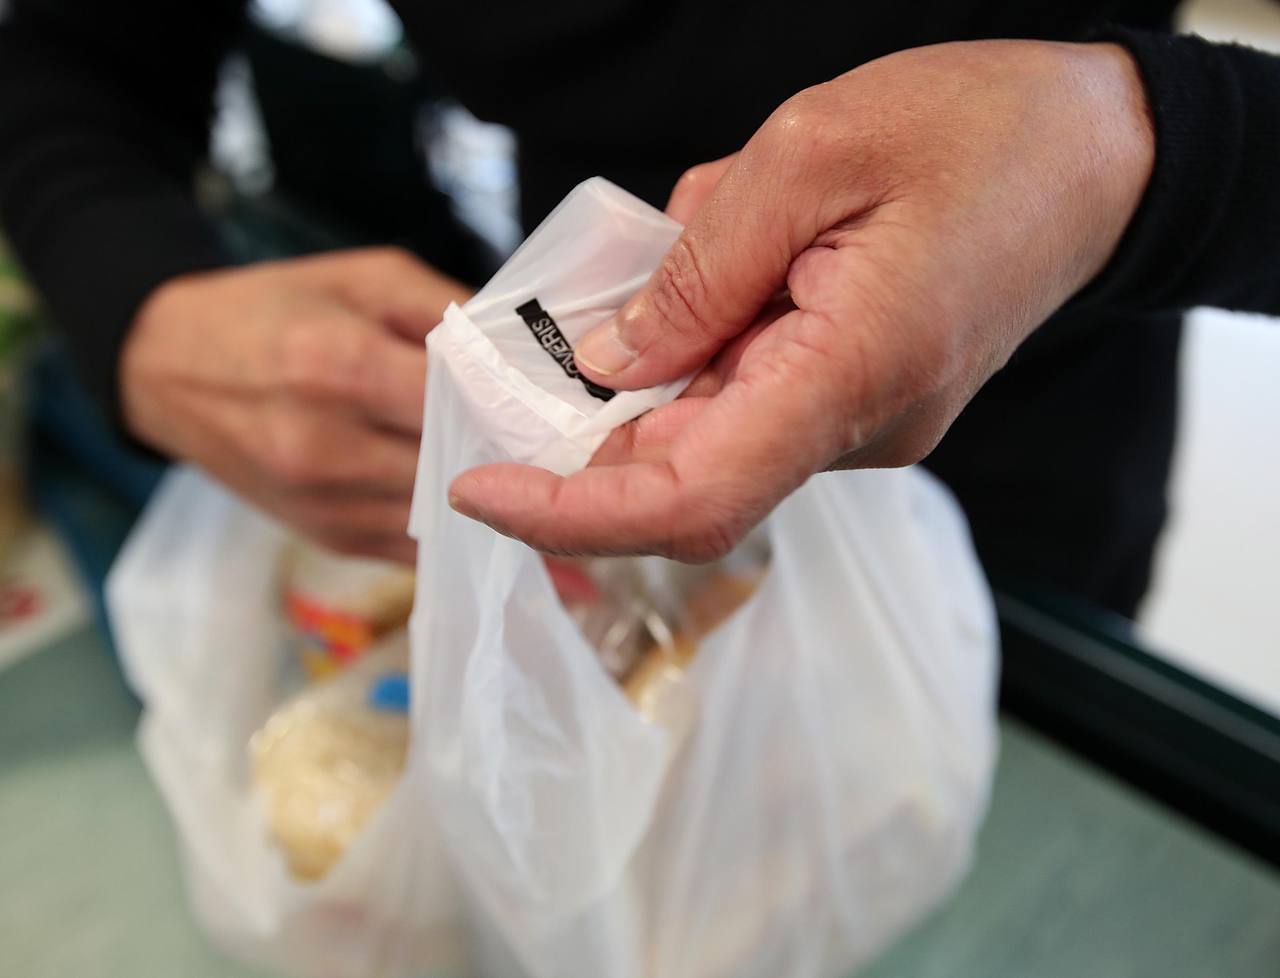 Новая Зеландия первой в мире запретила пластиковые пакеты для свежих продуктов в супермаркетах